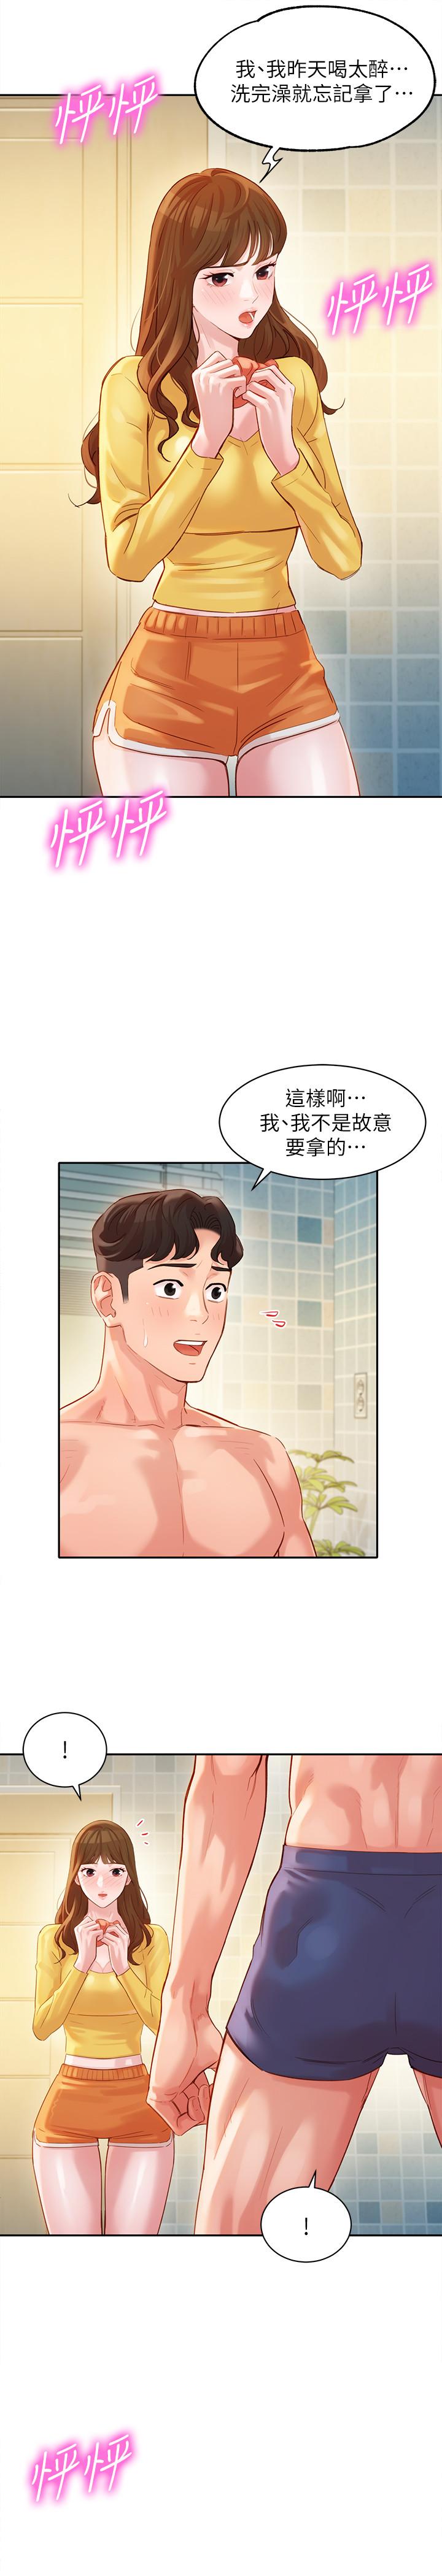 韩国污漫画 女神寫真 第26话-难道他们在浴室里...？ 20